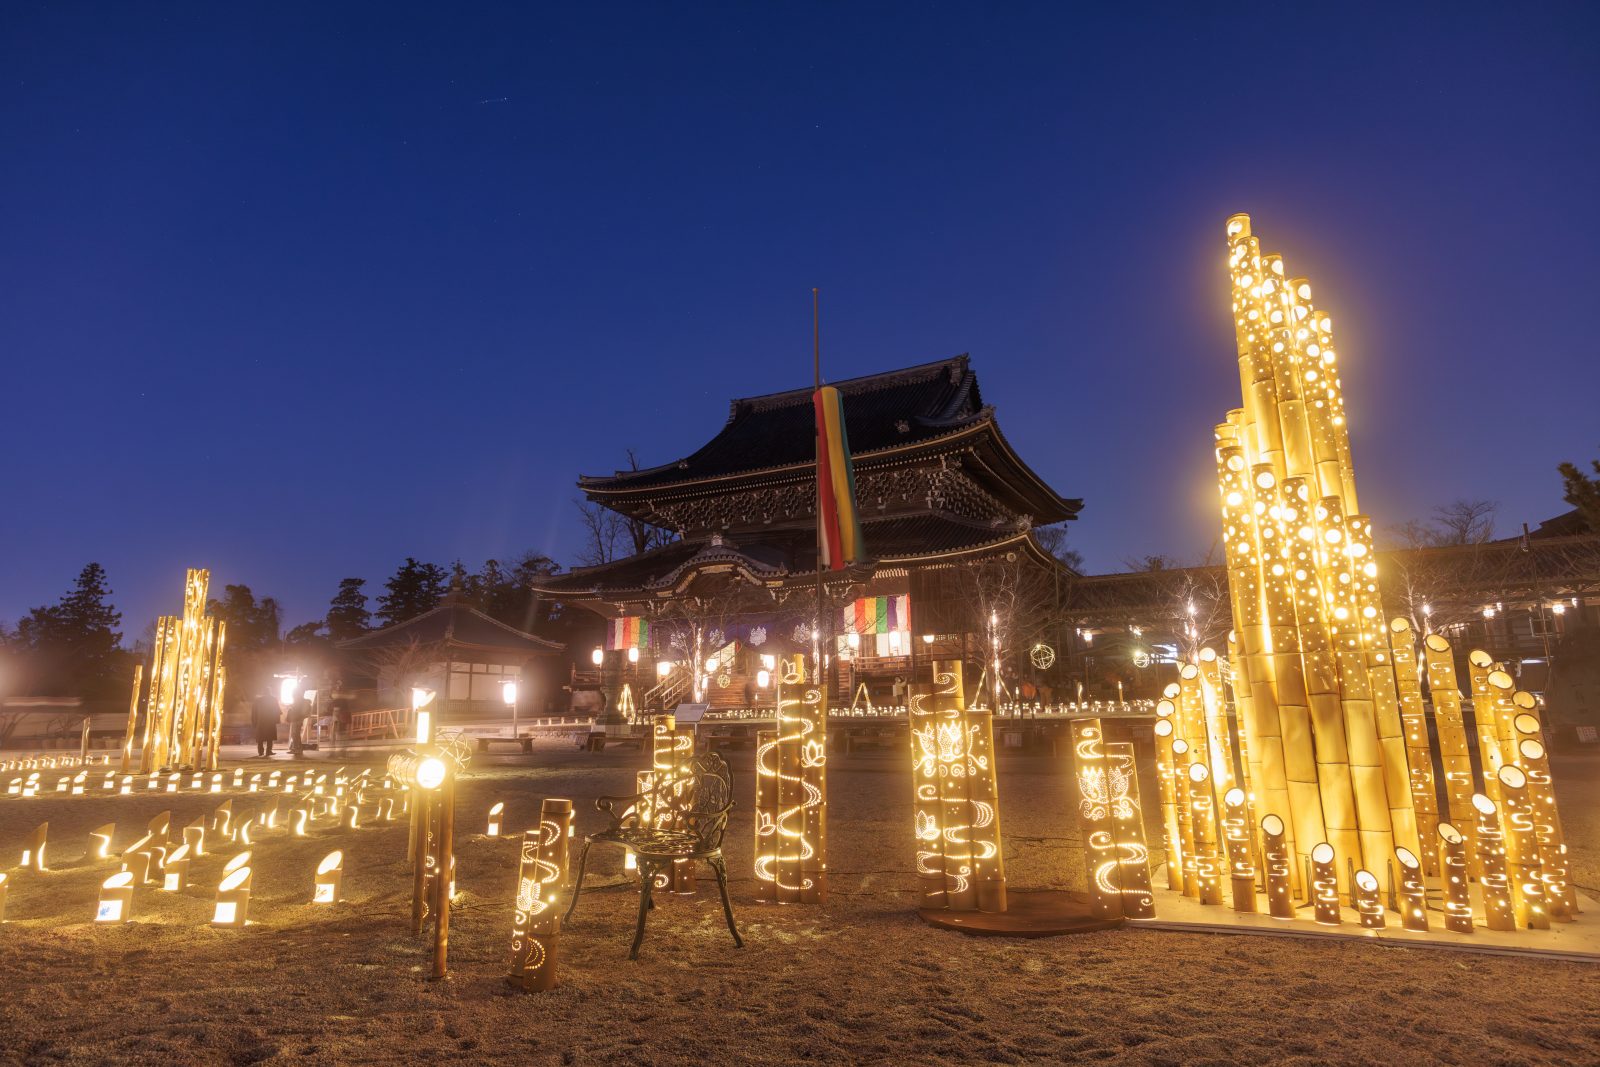 高田本山のお七夜が1月9日からスタート。東海最大級「3000本の竹あかり」が展示されます